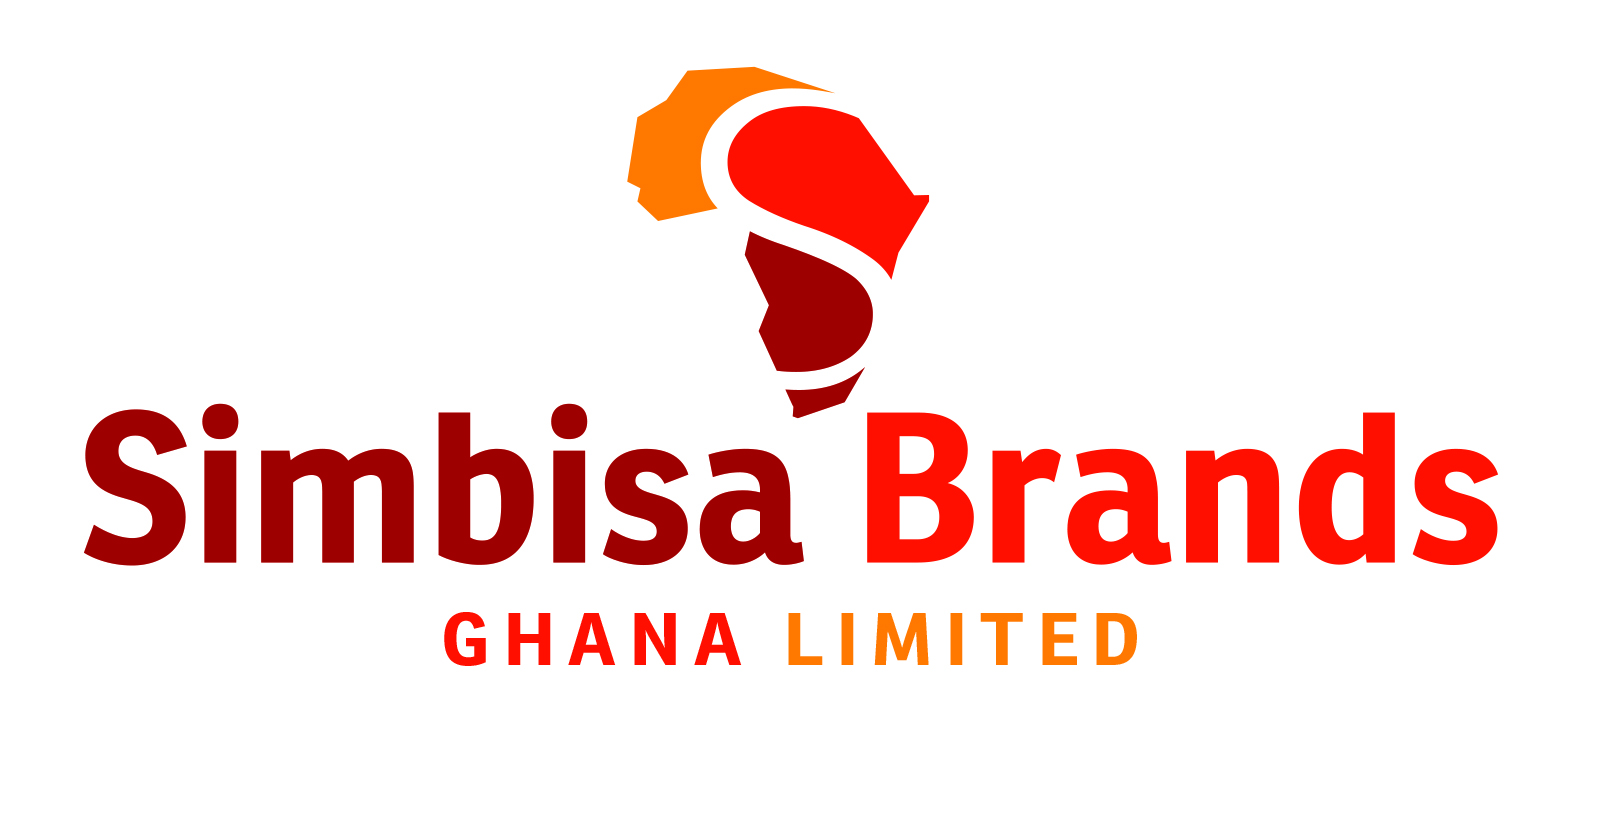 Simbisa Brands Ghana